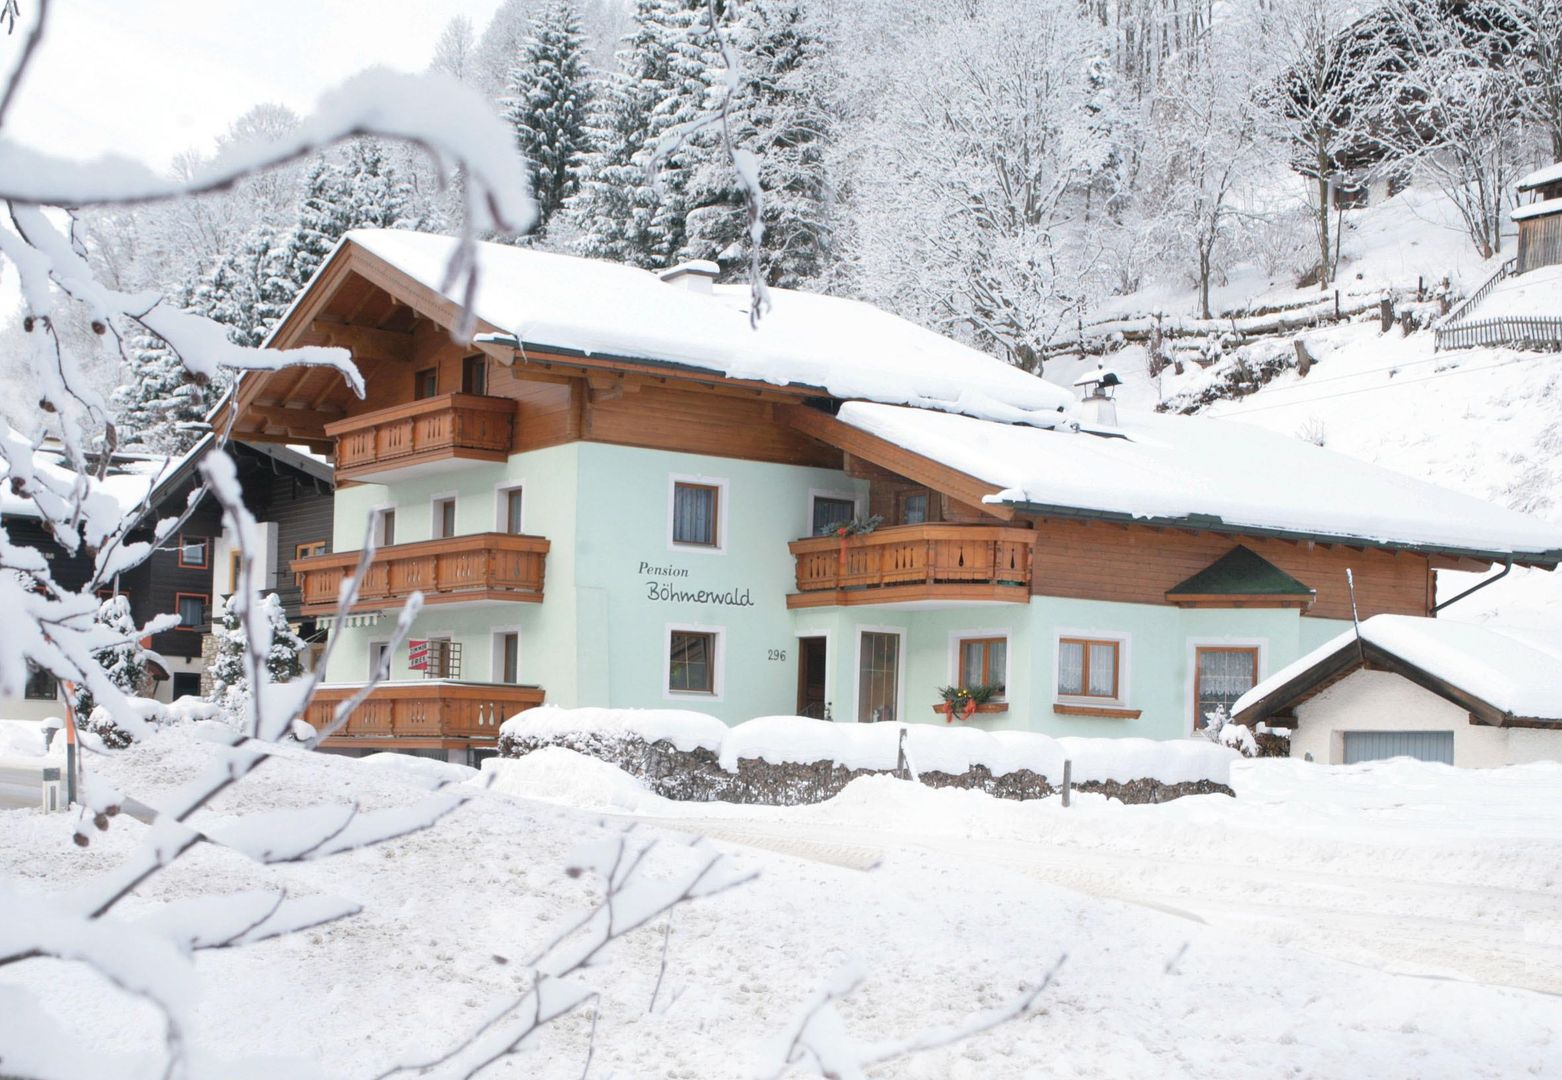 Meer info over Pension Böhmerwald  bij Wintertrex